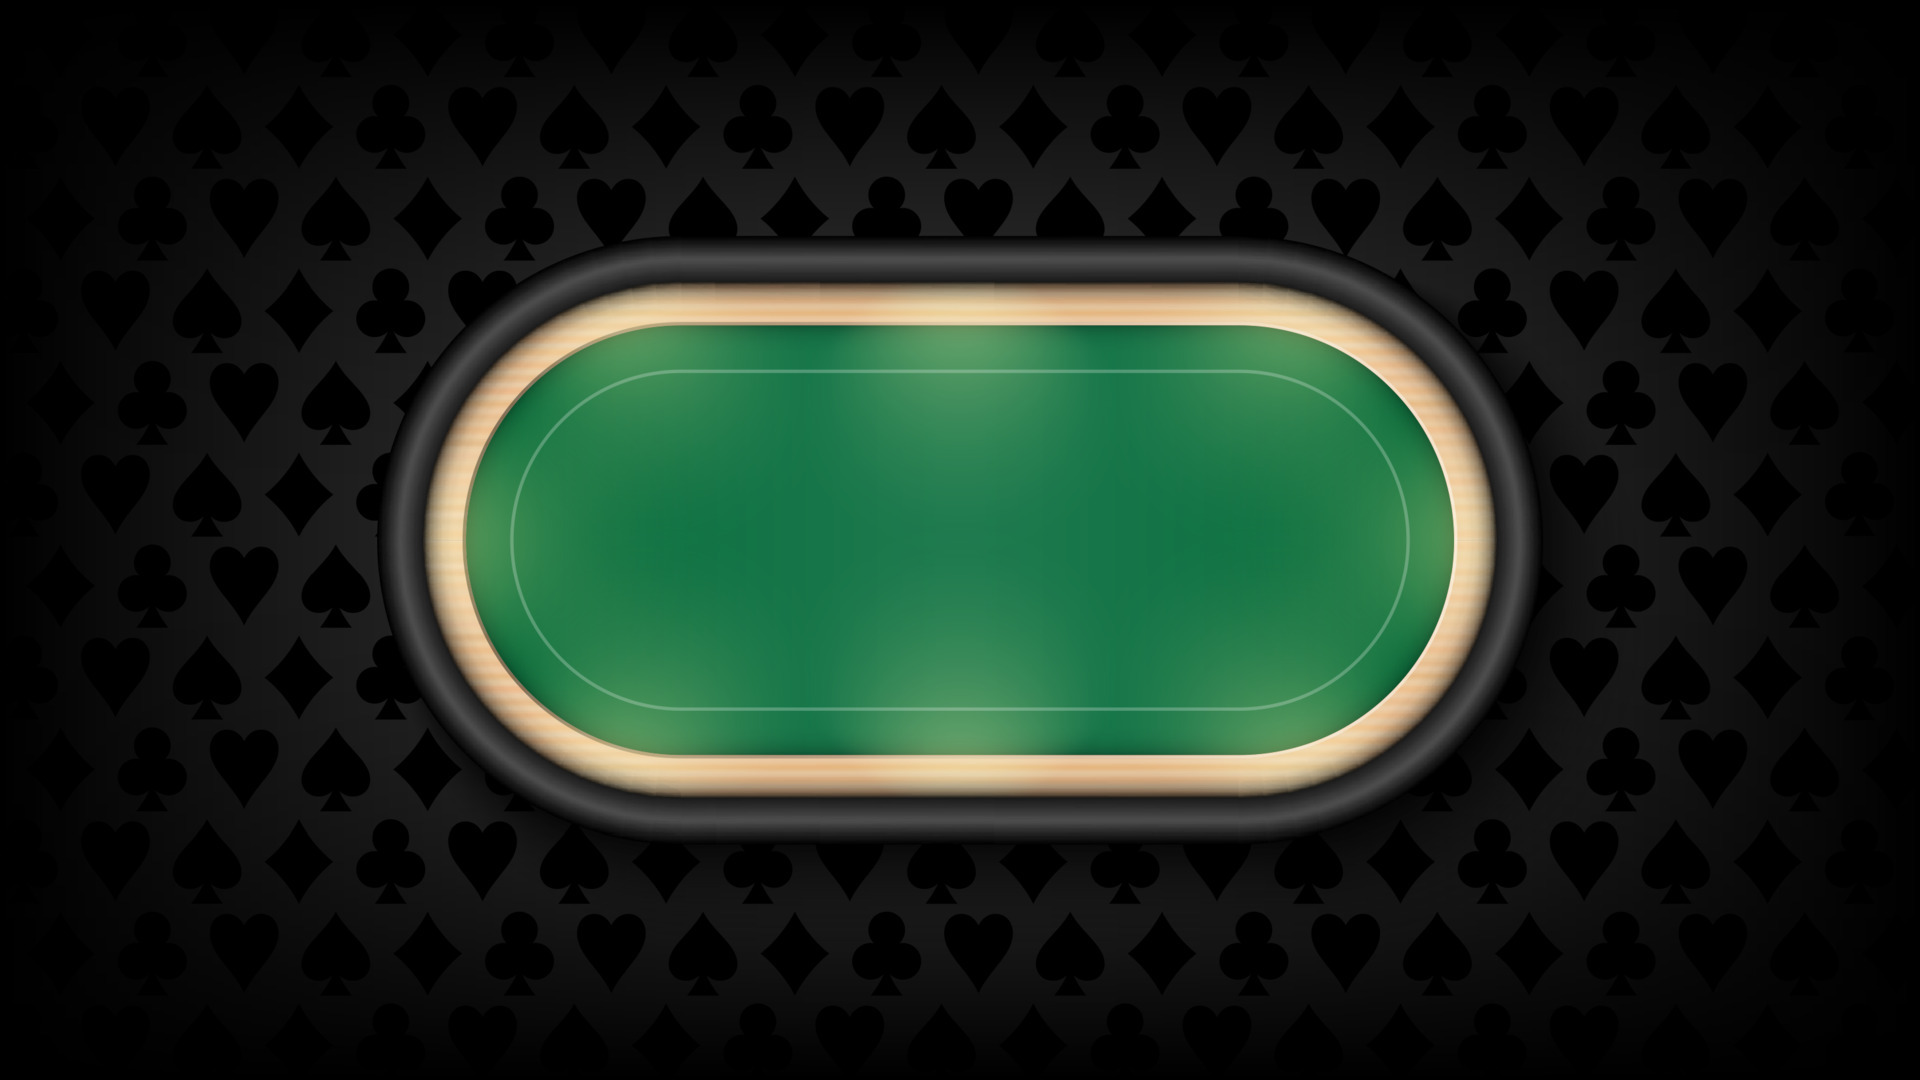 tavolo da poker panno verde su sfondo scuro, illustrazione vettoriale  6325236 Arte vettoriale a Vecteezy